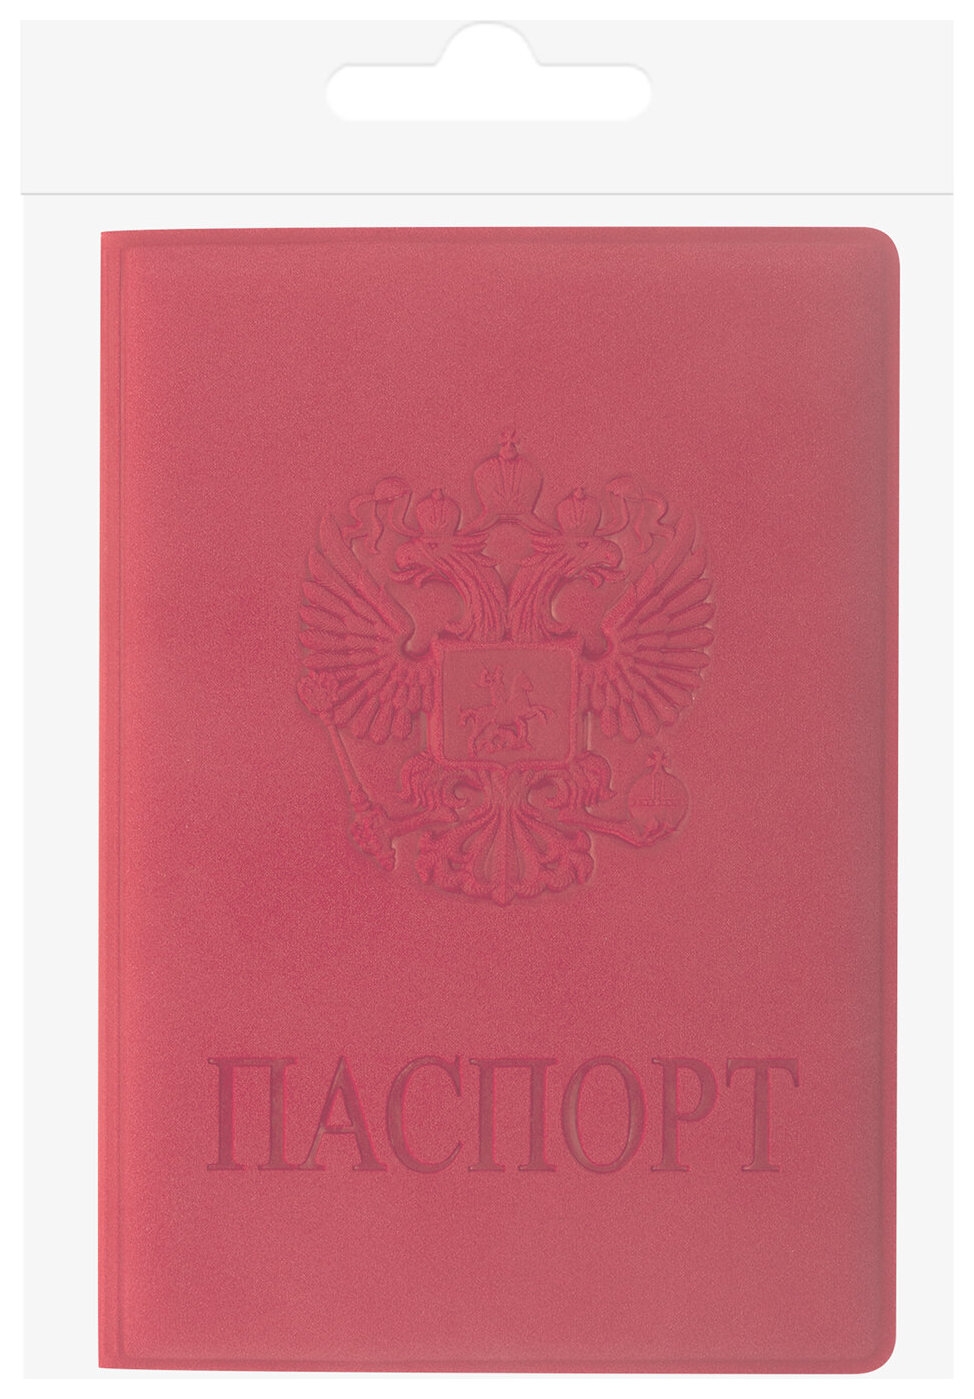 Обложка для паспорта Staff, мягкий полиуретан, Герб, красная, 237612